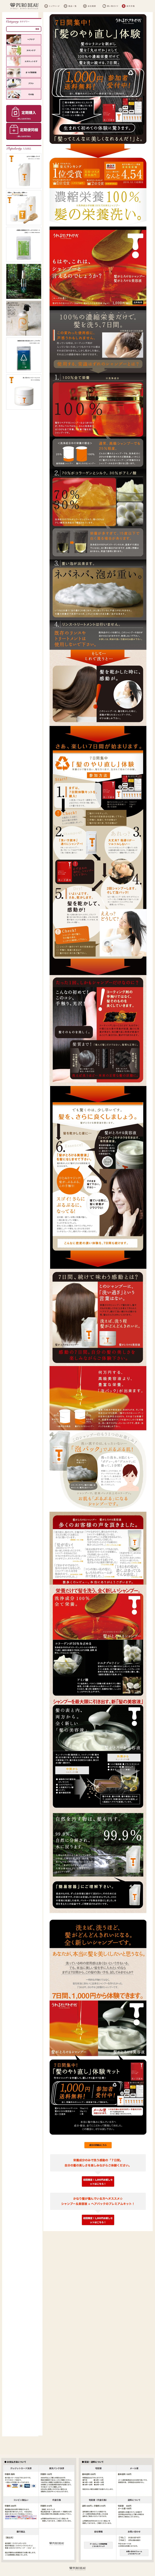 髪がとろけるシャンプーサイトのランディングページデザイン Lp参考事例 Lp幹事